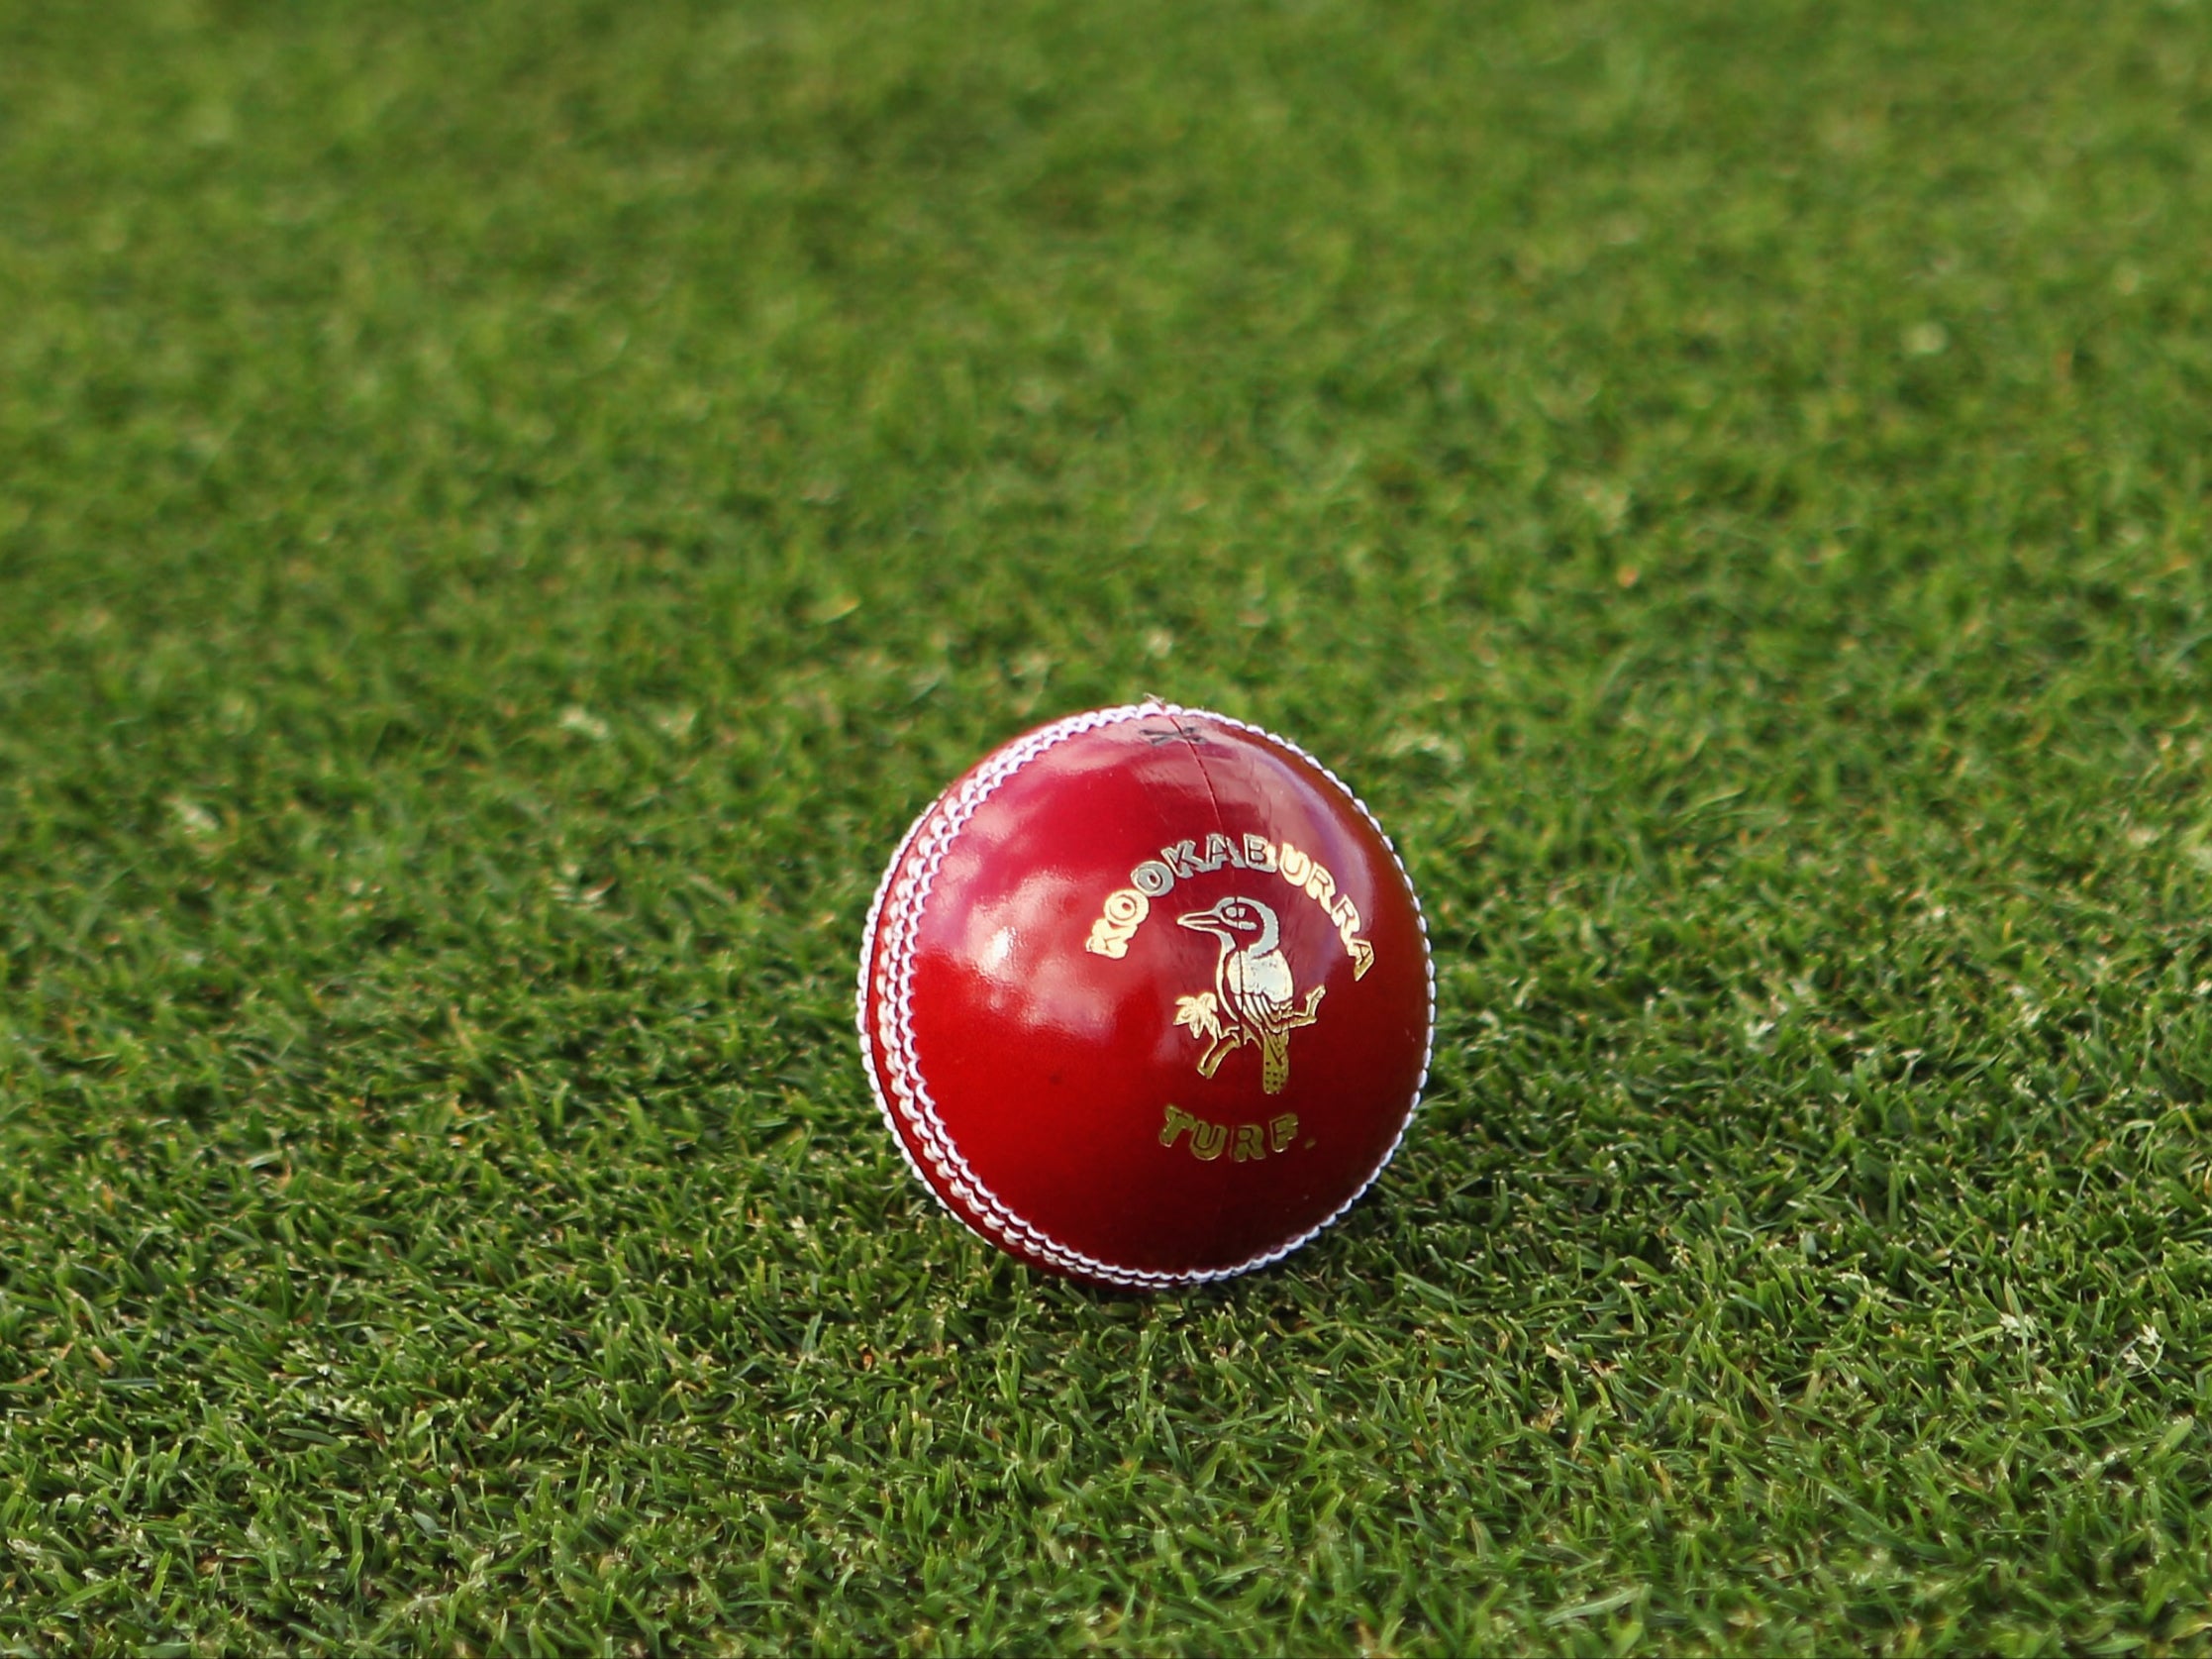 Una vista general de una pelota de cricket